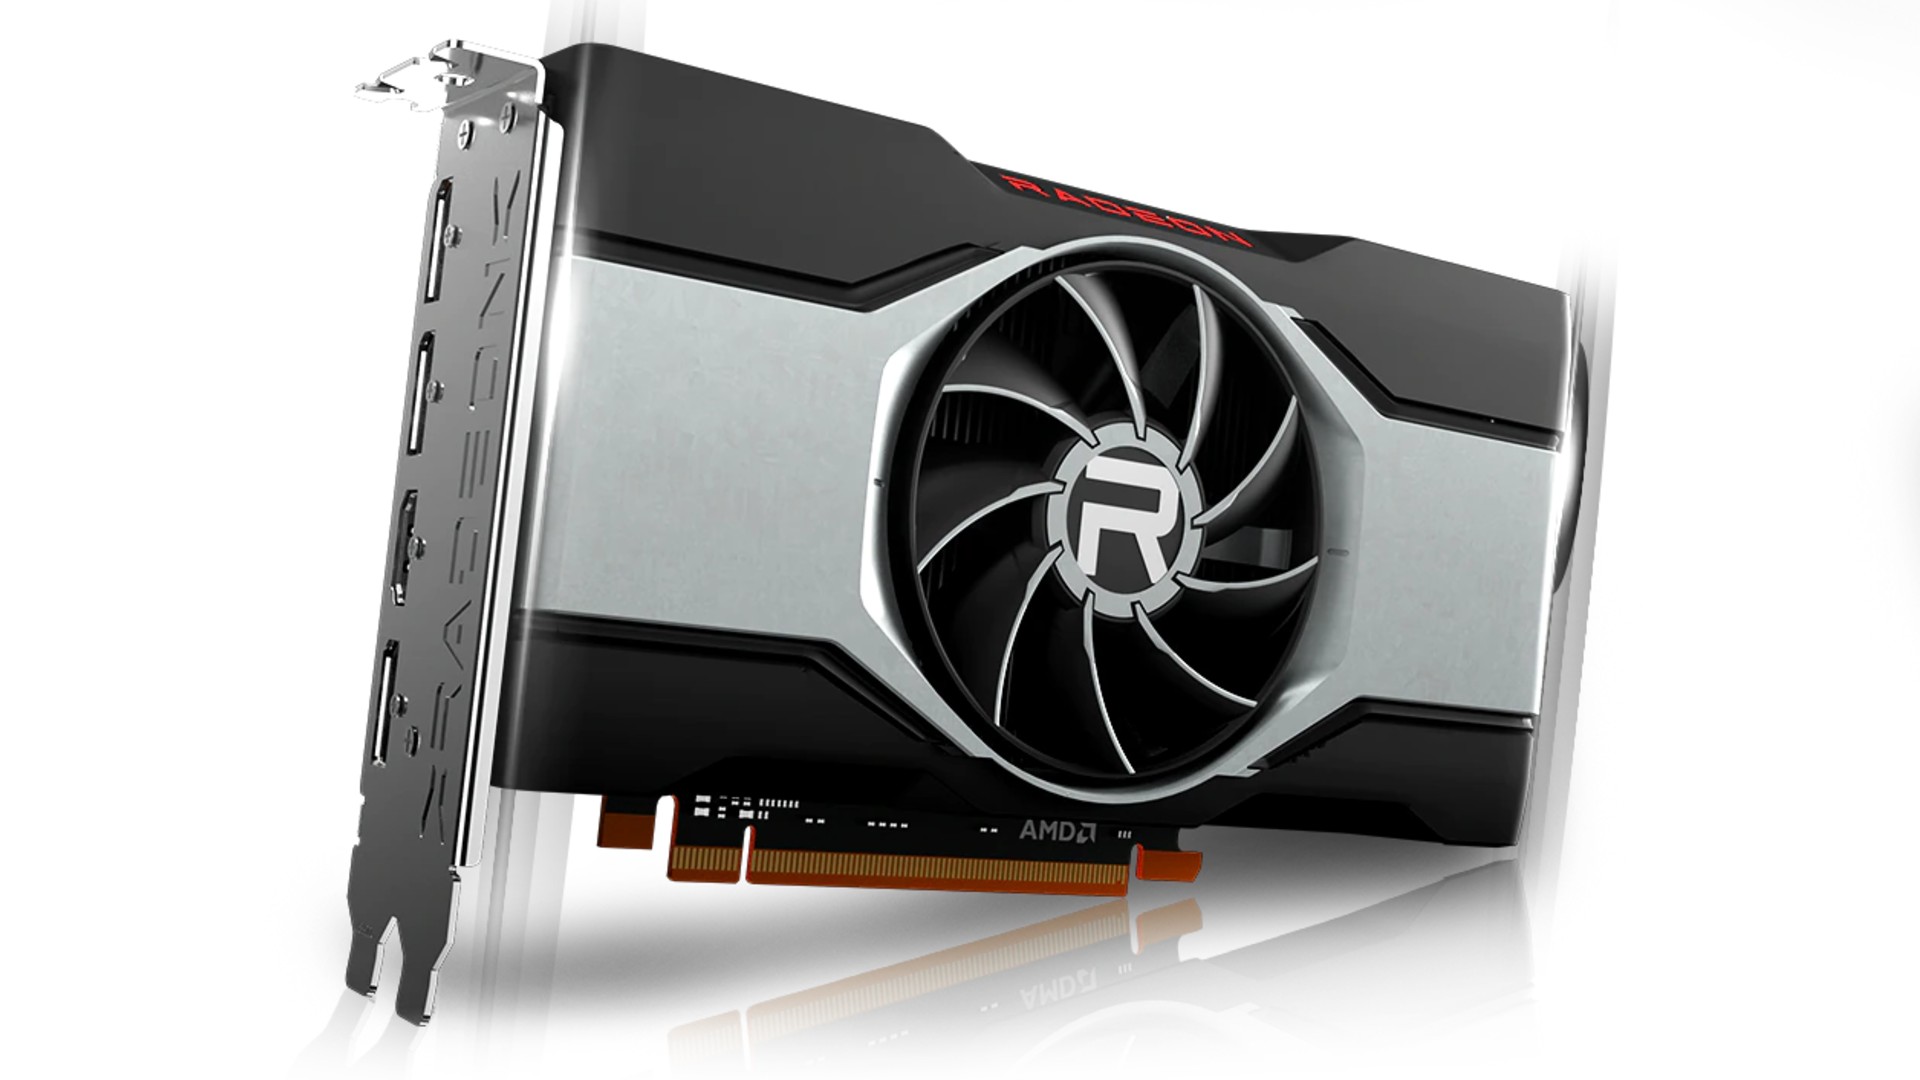 AMD GPU-ya xwe ya Radeon RX 6600 XT eşkere dike, ku lîstika 1080p bi 379 $ armanc dike.